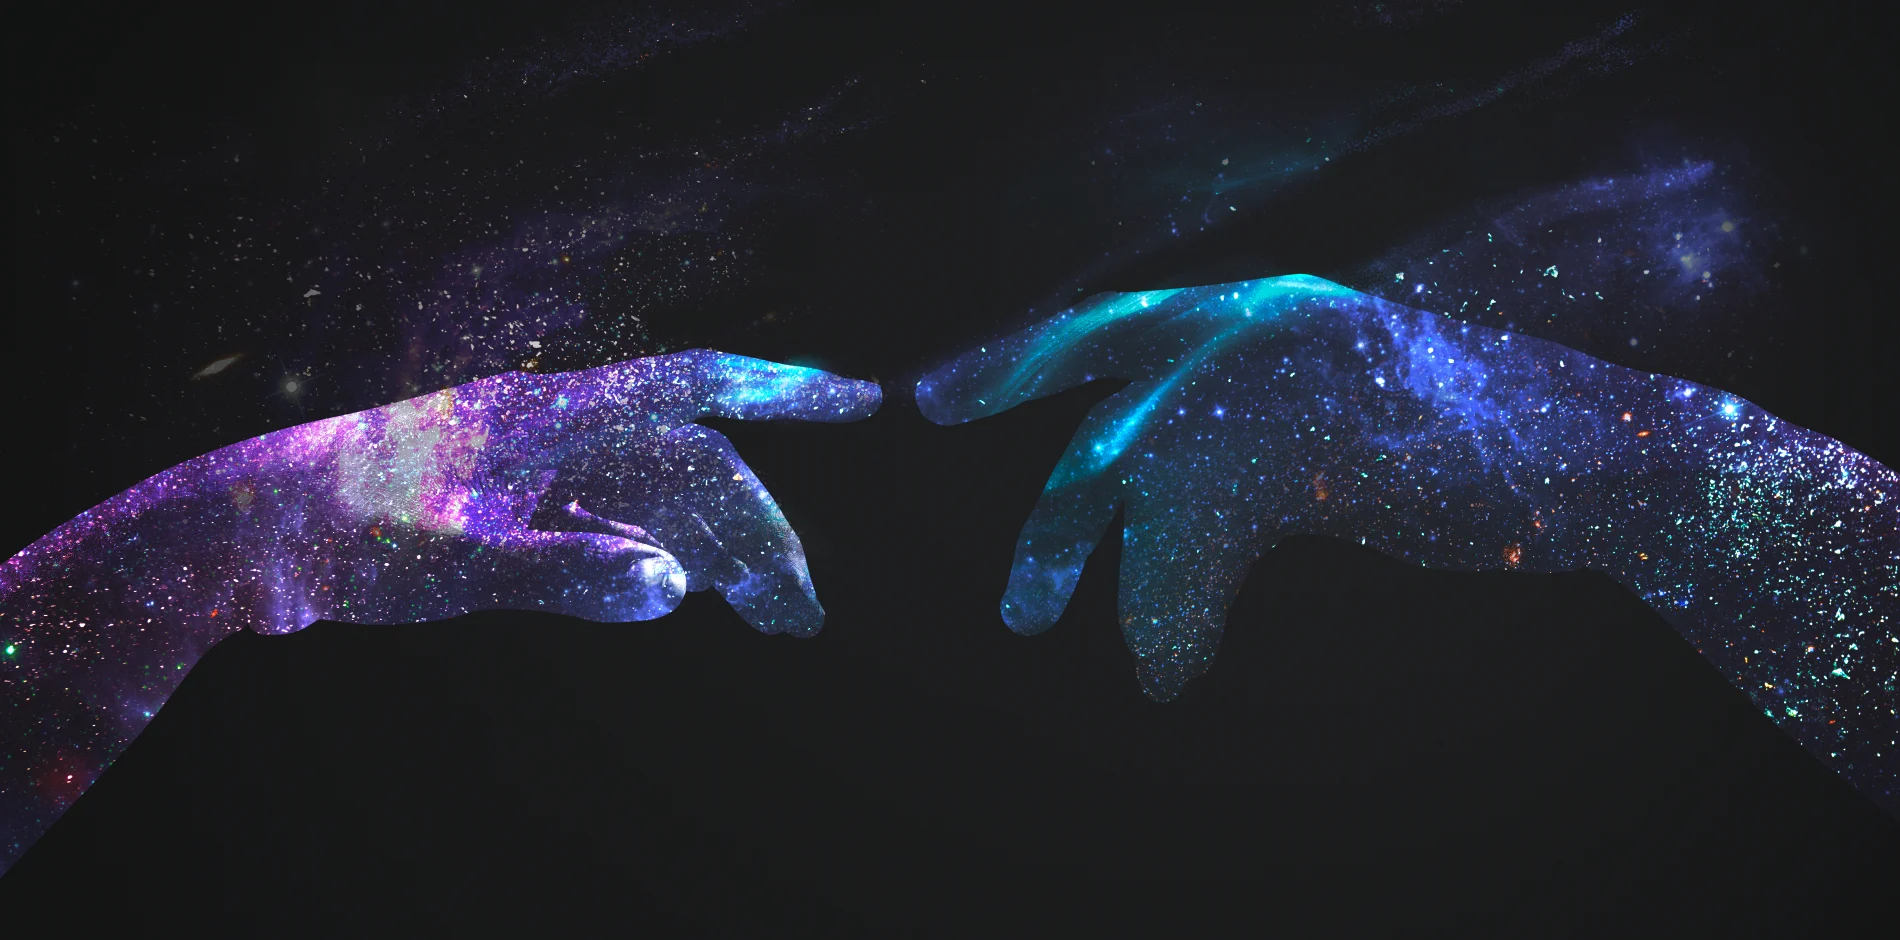 图片展示了两只手指尖相对，它们覆盖着星空图案，呈现出宇宙般的神秘感，背景是纯黑色，星光点缀其间。